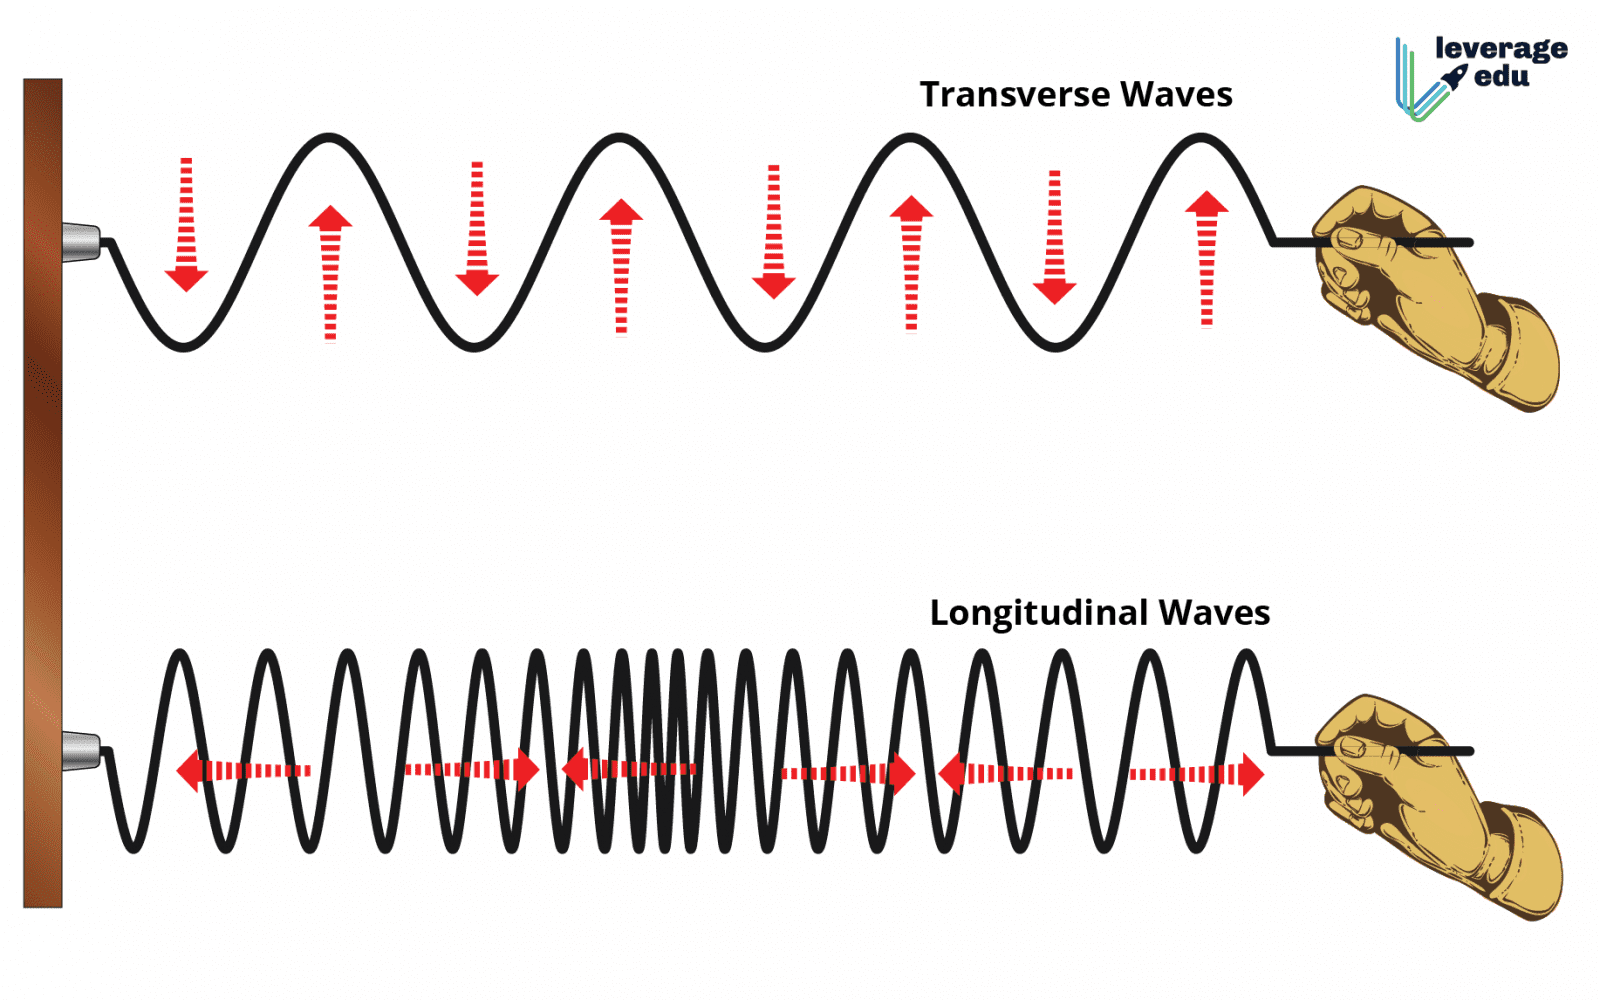 waves travel through air